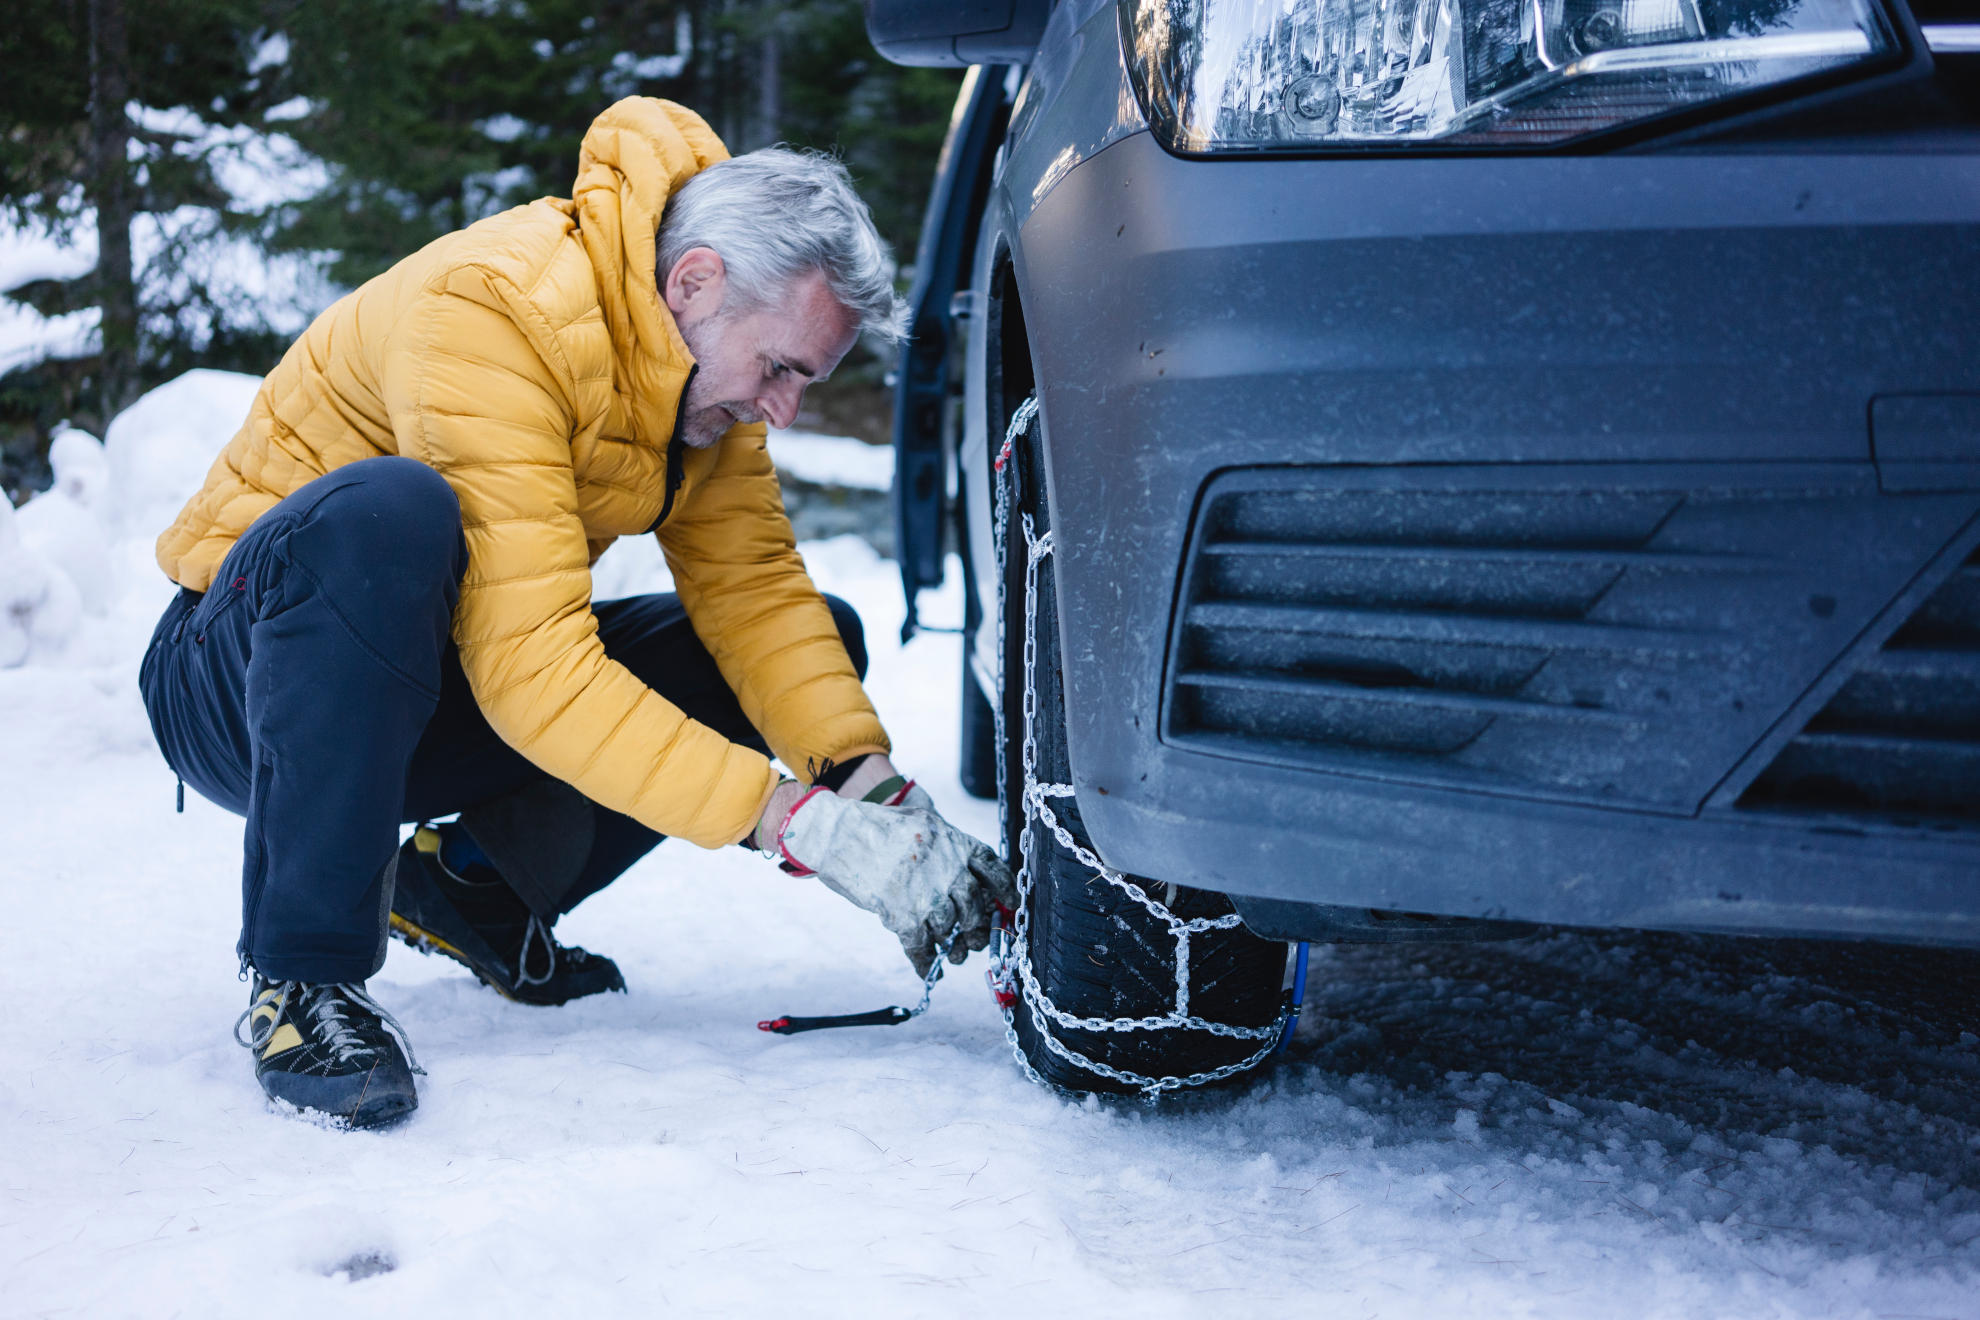 Checkliste: So machst du dein Auto winterfest